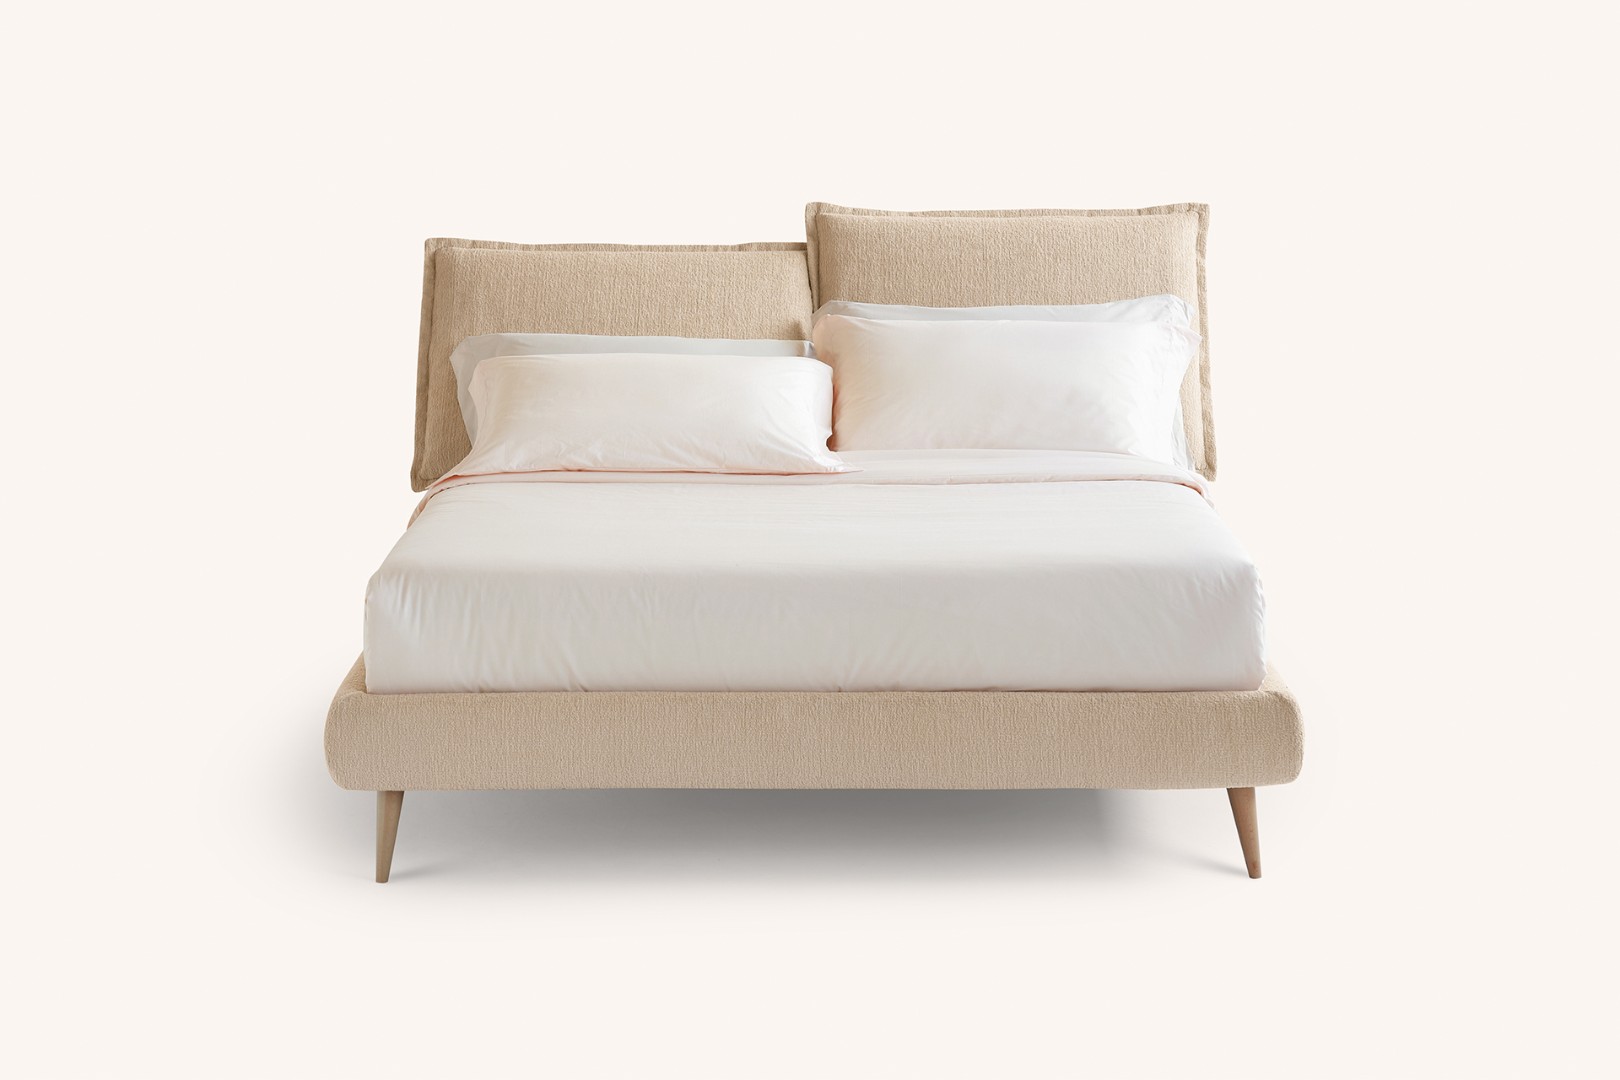 Кровать So Pop — ₽, купить у официального дилера Nicolettihome